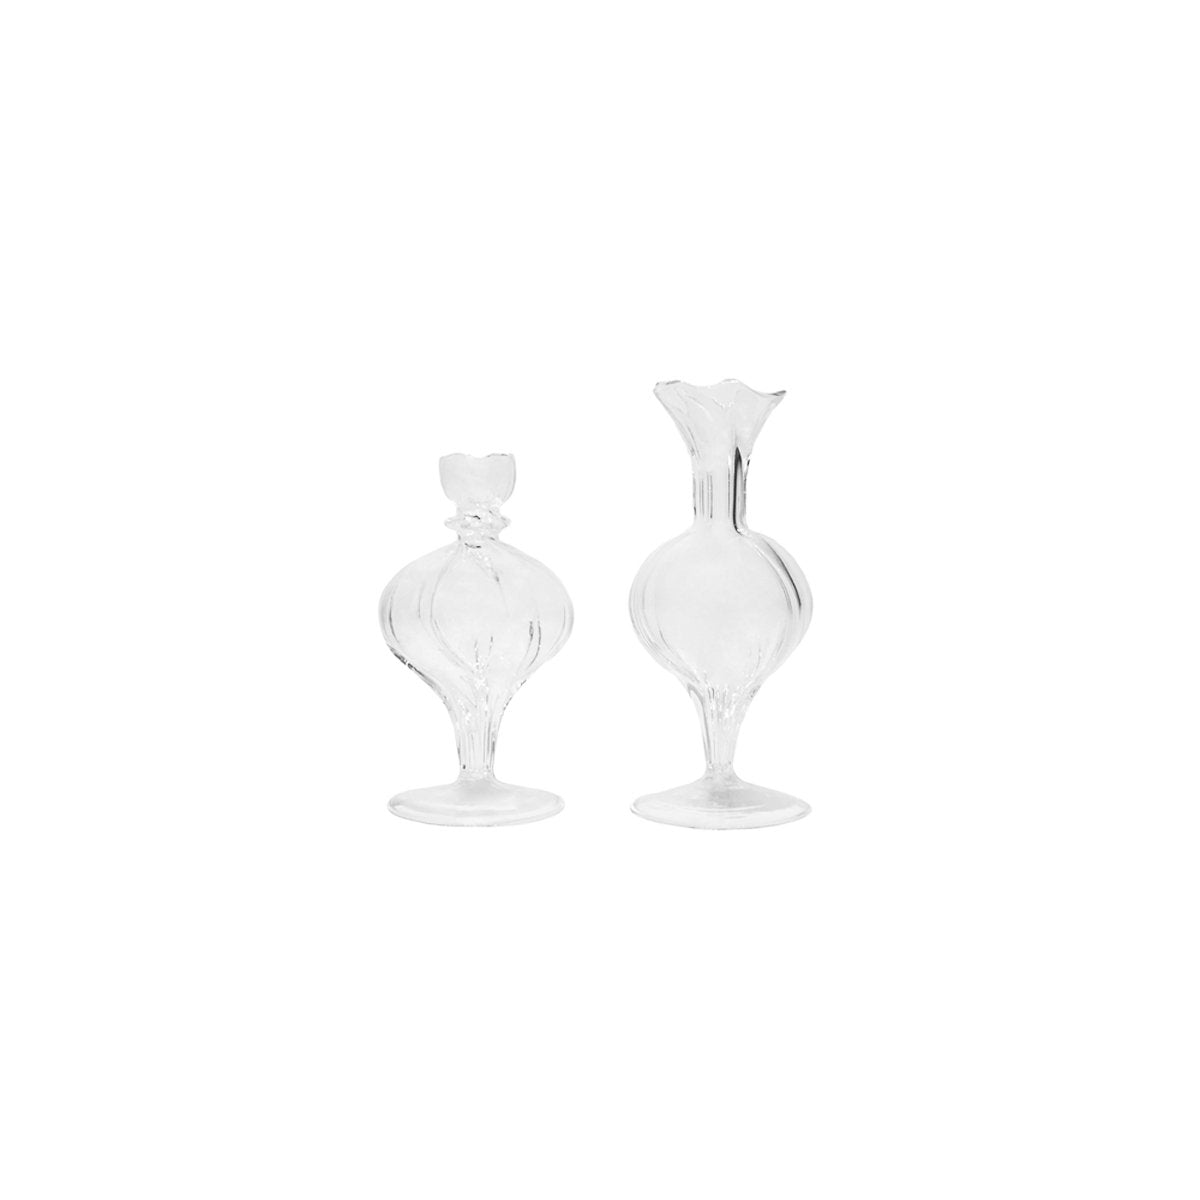 Medium Spherical Vase, Clear, 1 pc